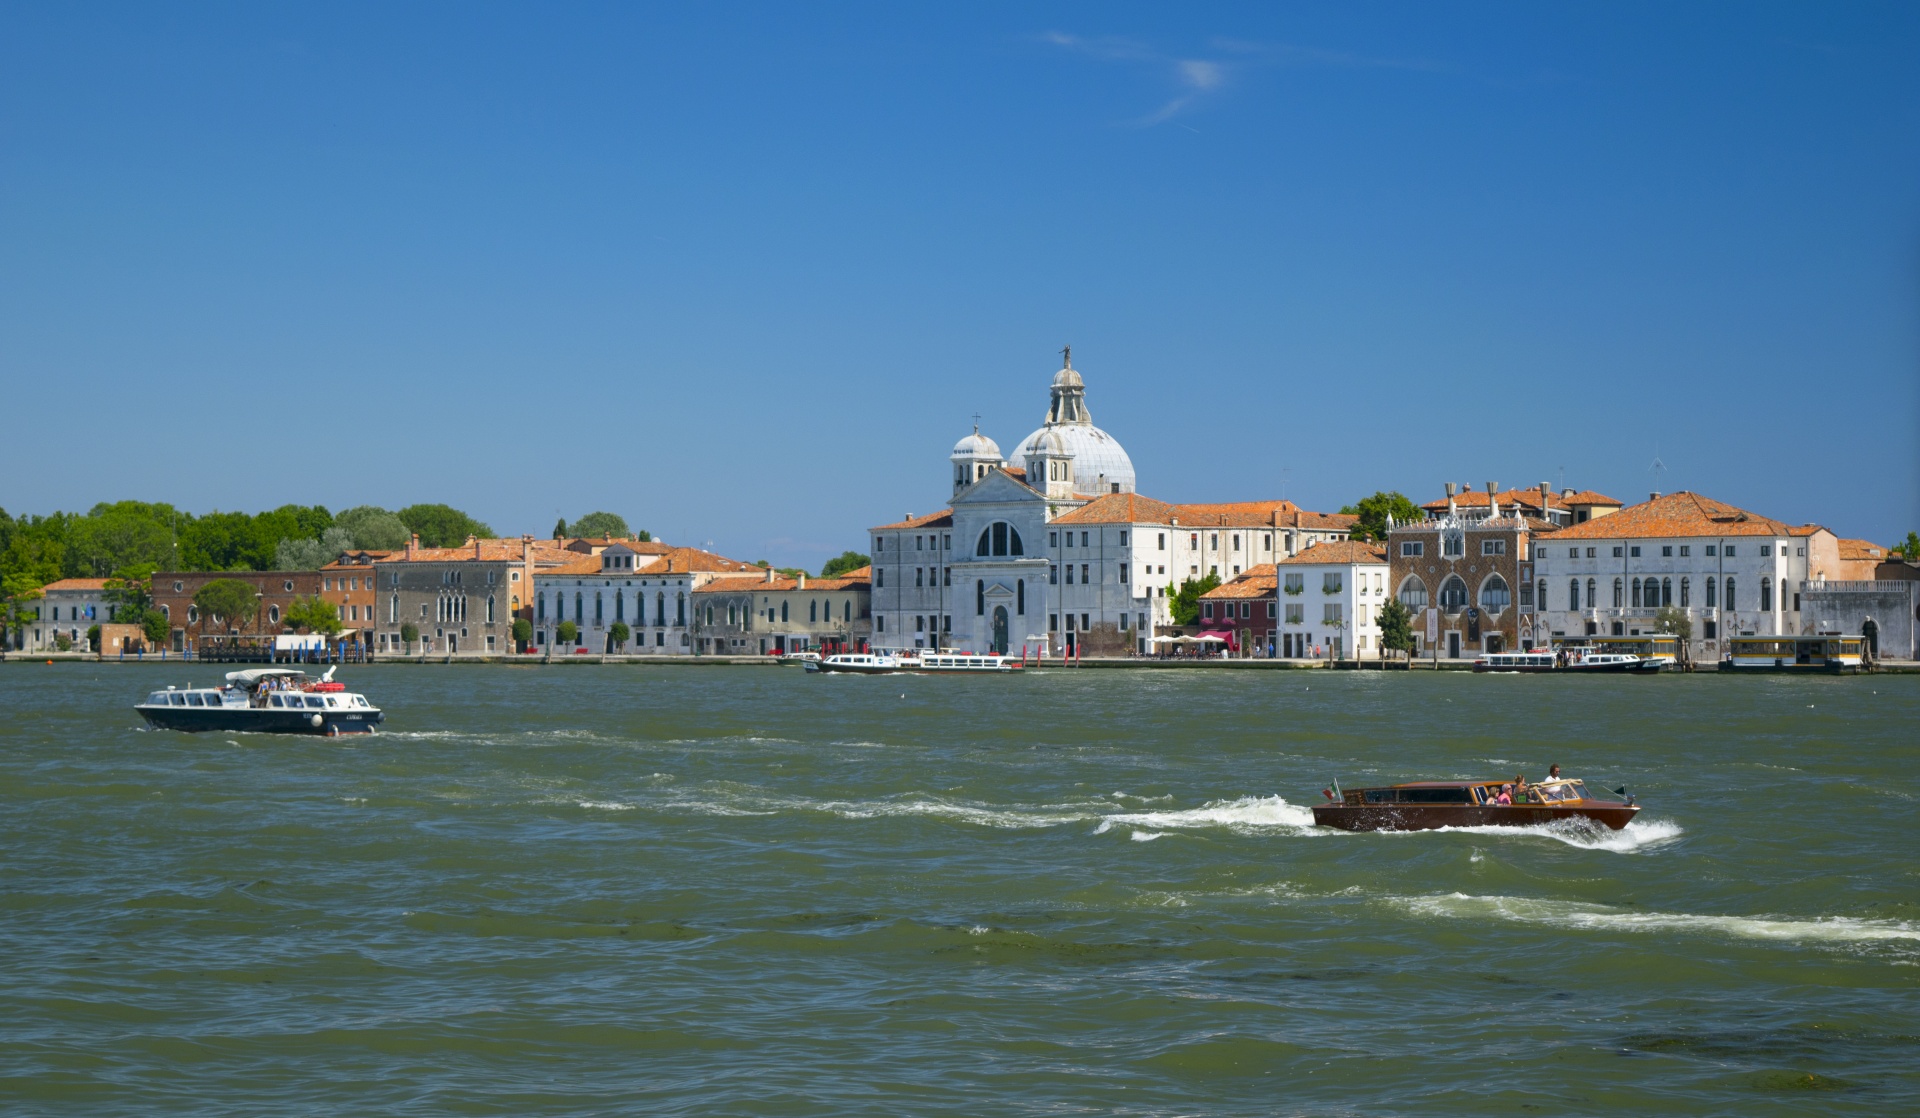 Venice Image 1723